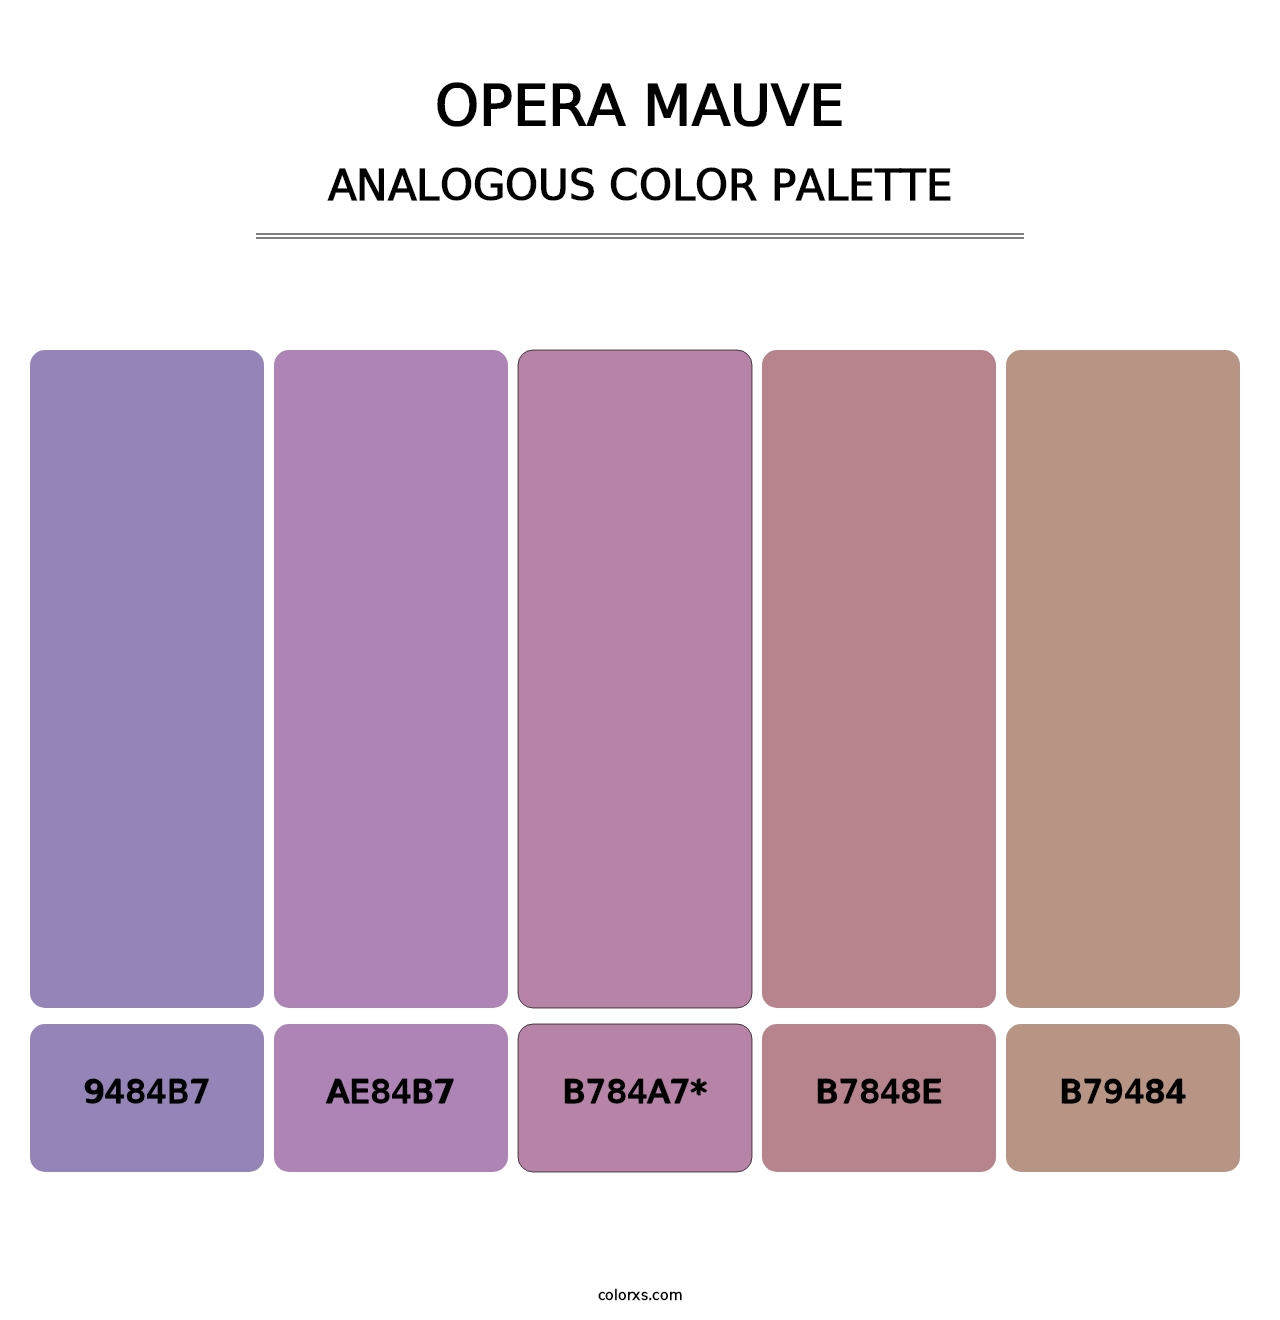 Opera Mauve - Analogous Color Palette